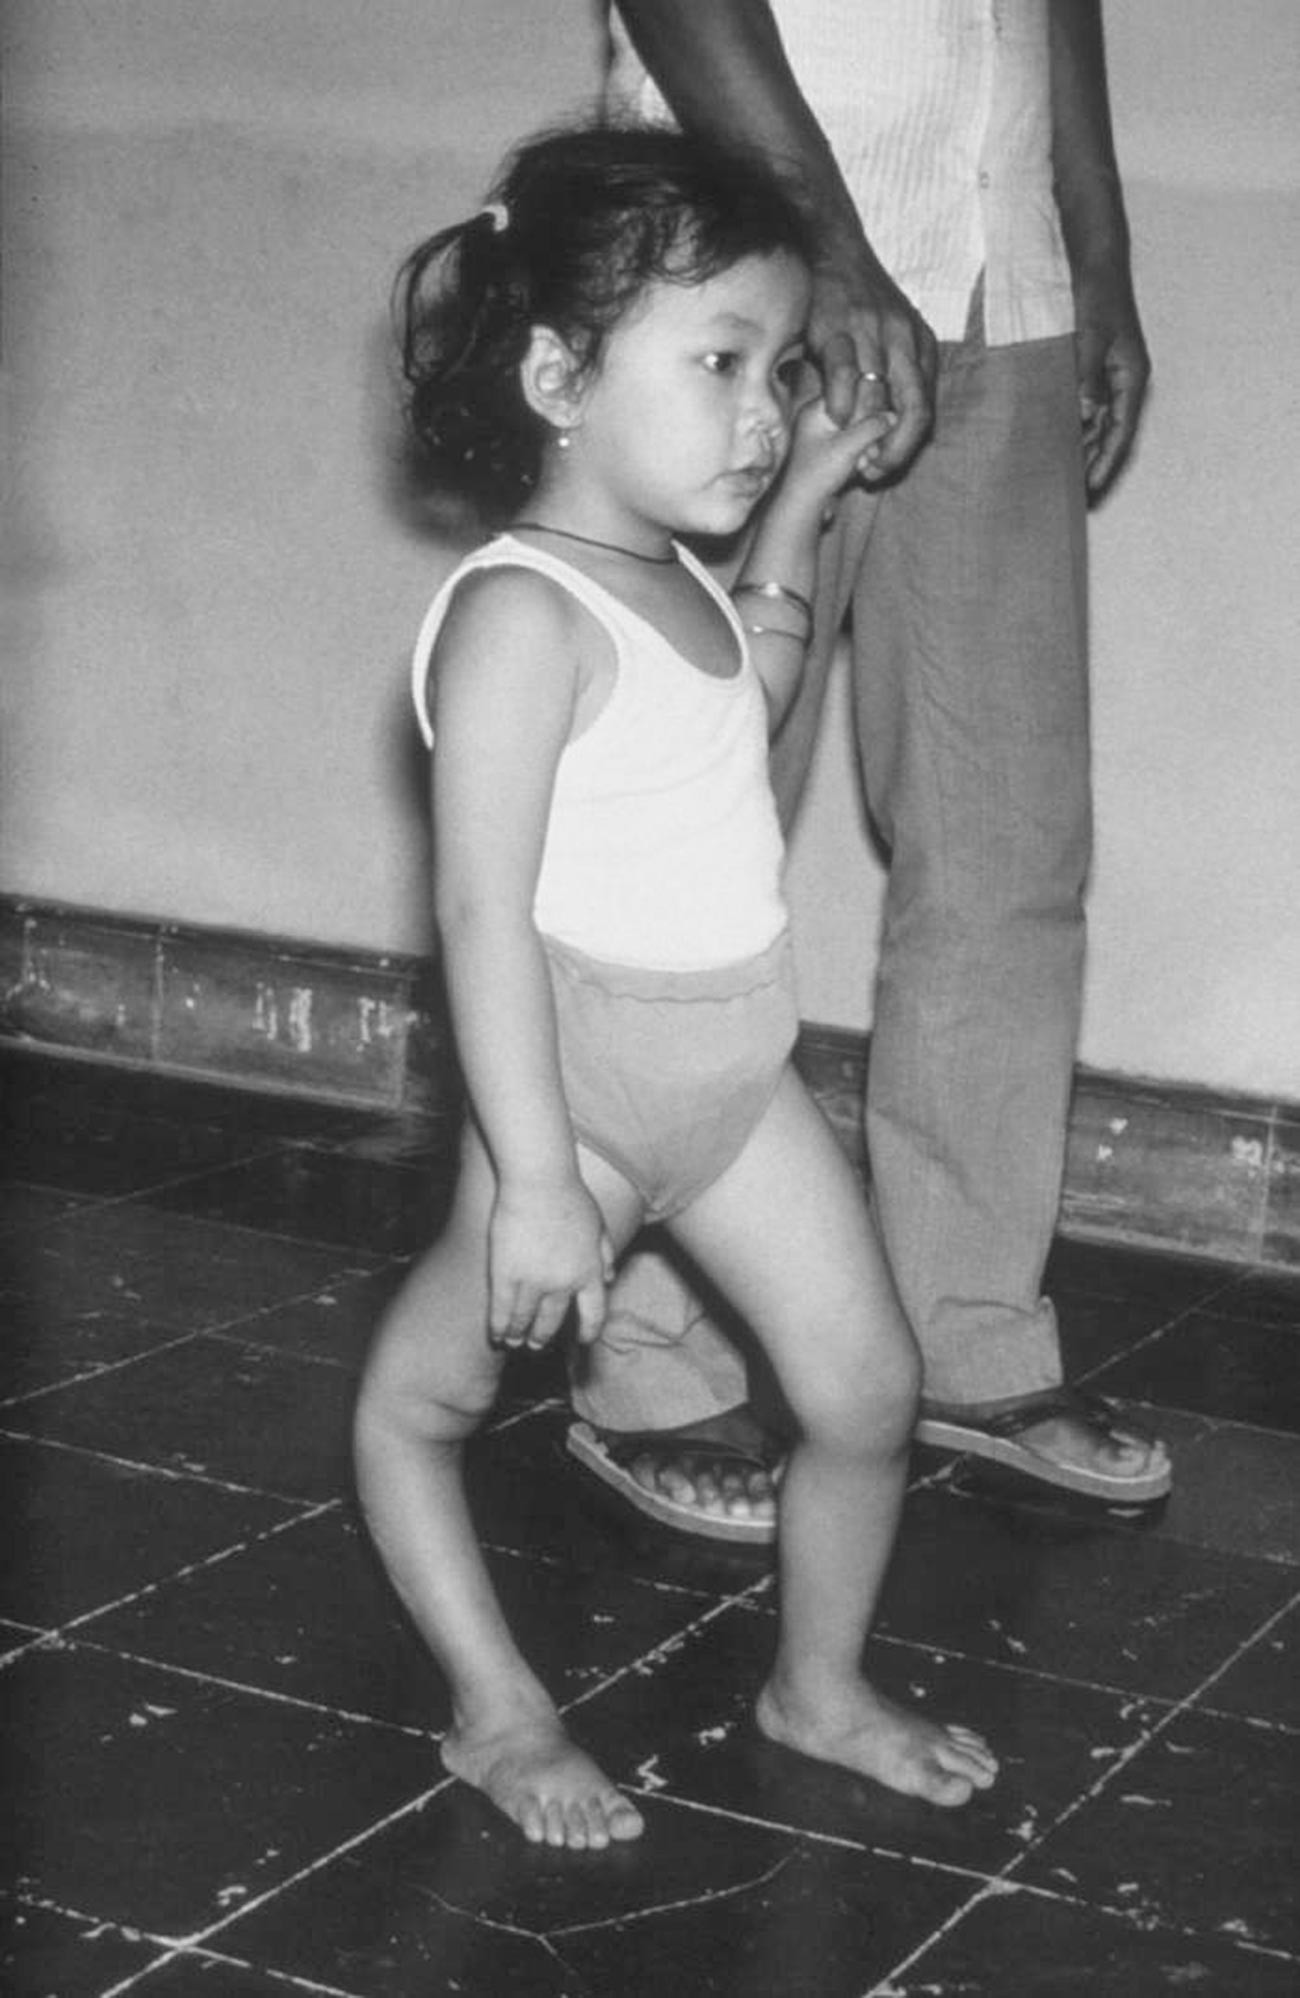 Ein Mädchen mit einem deformierten rechten Bein aufgrund von Polio